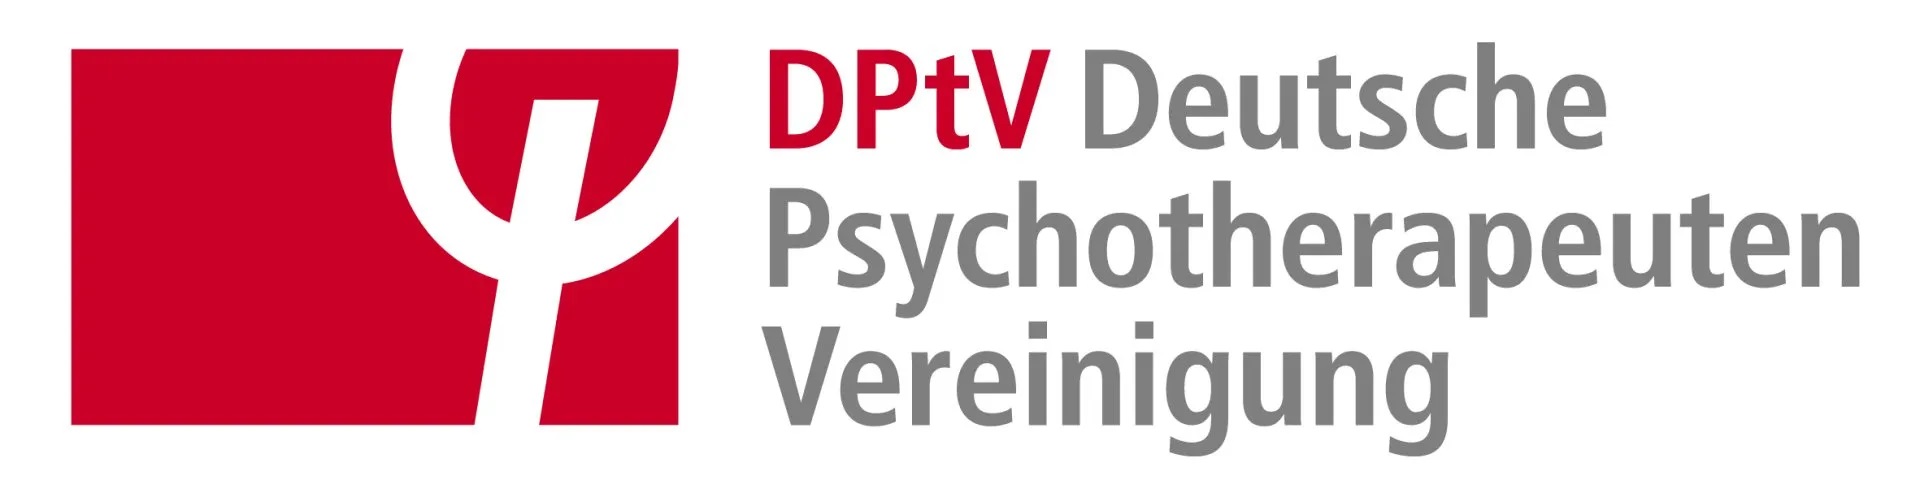 Deutsche PsychotherapeutenVereinigung e.V.